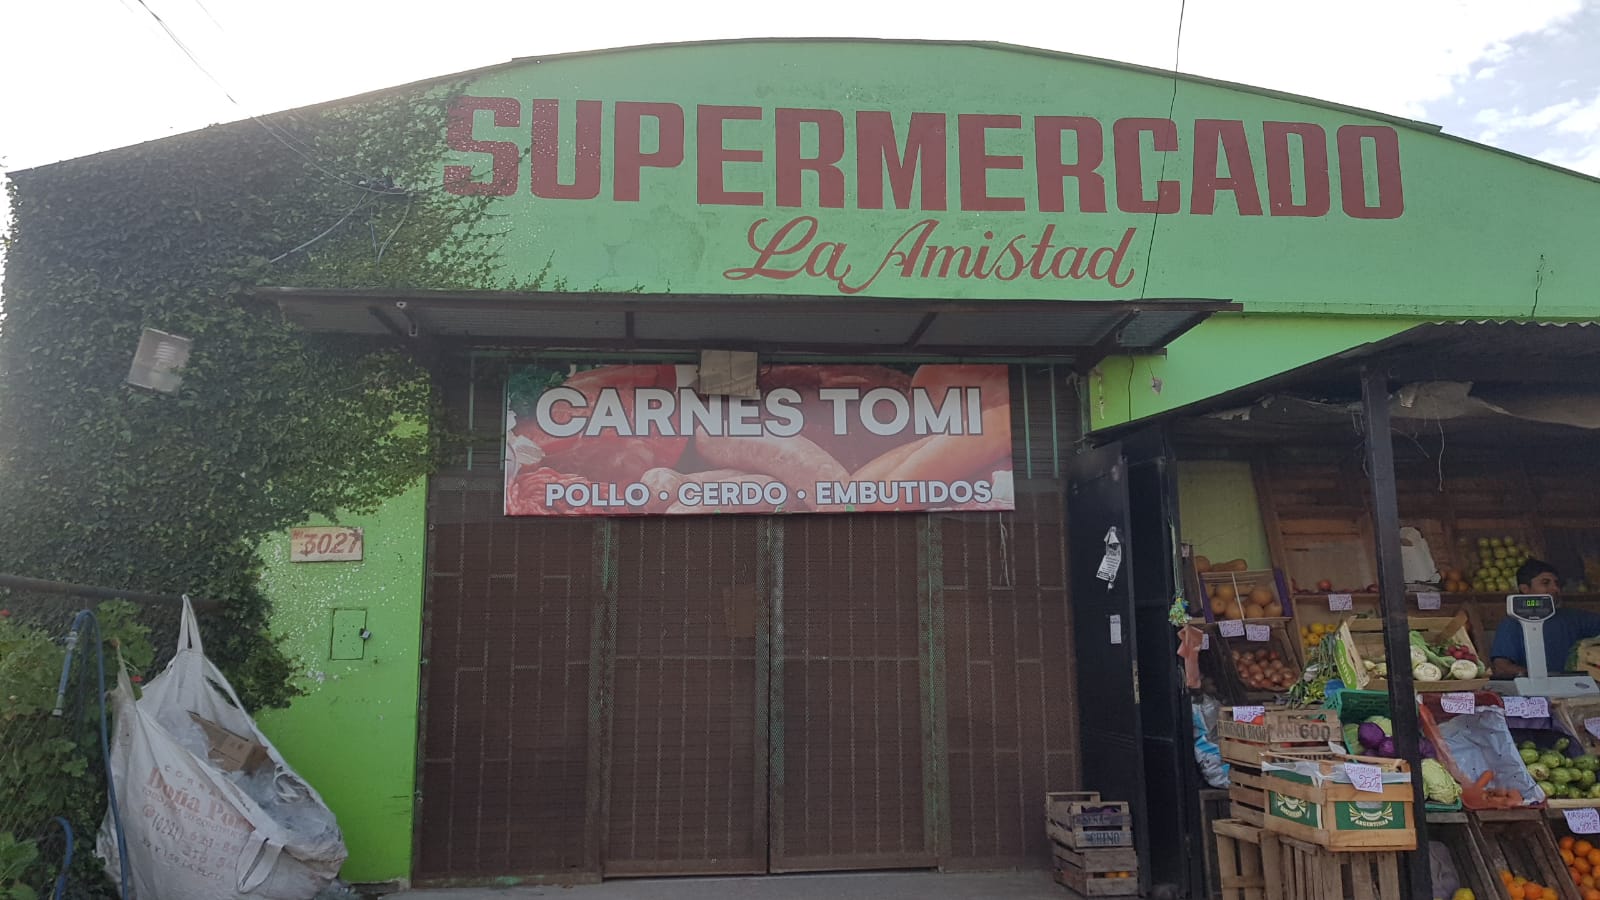 Hubo un “Robo agravado” y rumores de saqueo en supermercados de Romero